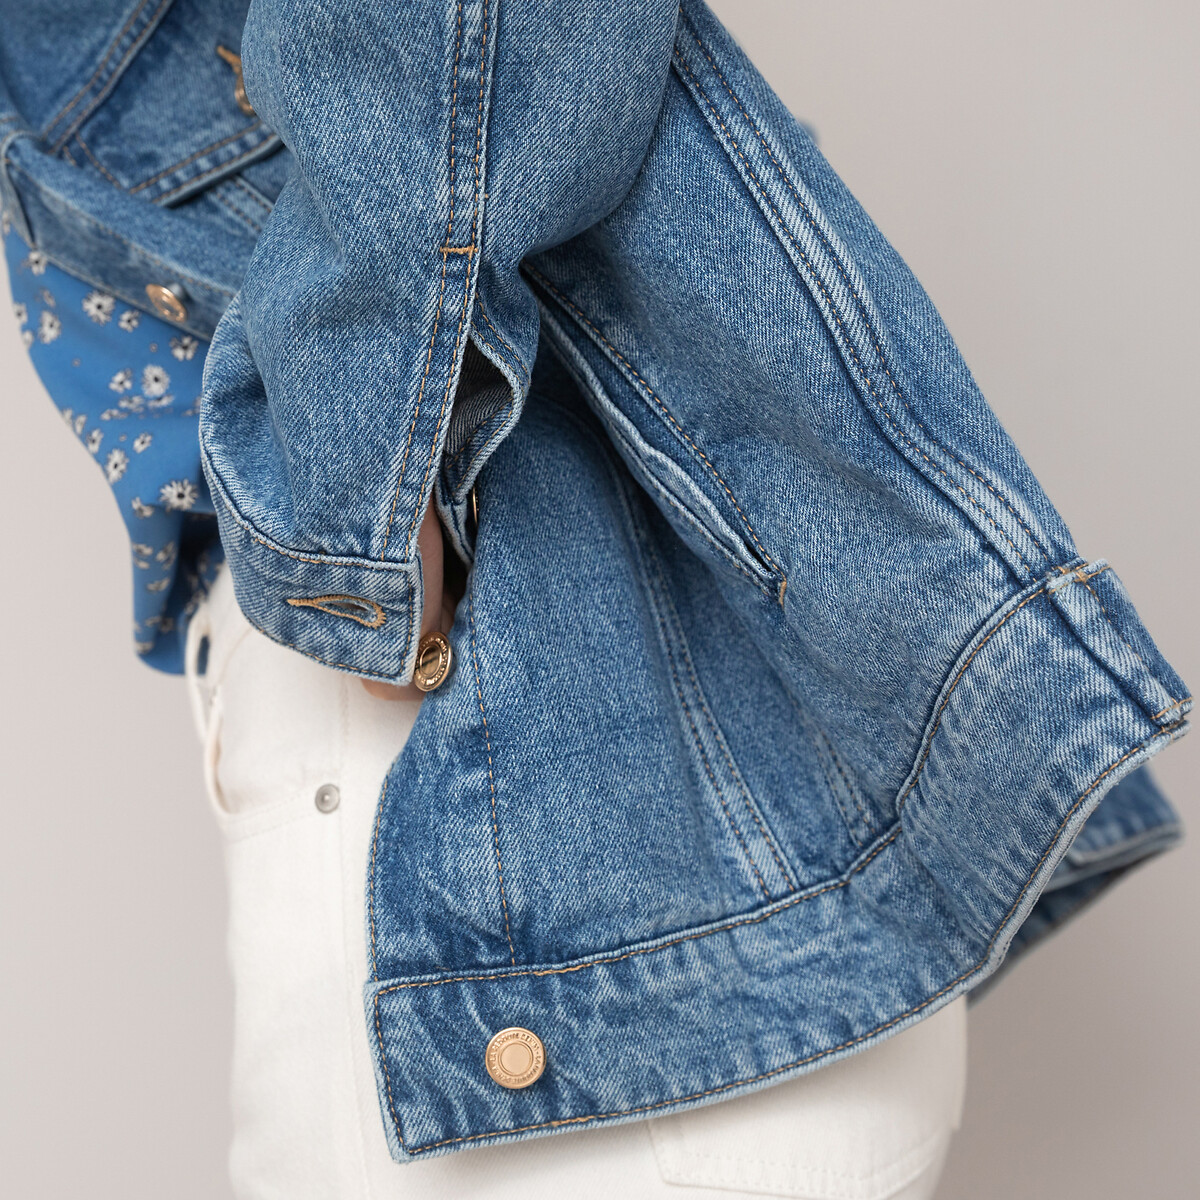 Куртка Из джинсовой ткани широкого покроя 44 (FR) - 50 (RUS) синий LaRedoute, размер 44 (FR) - 50 (RUS) Куртка Из джинсовой ткани широкого покроя 44 (FR) - 50 (RUS) синий - фото 3